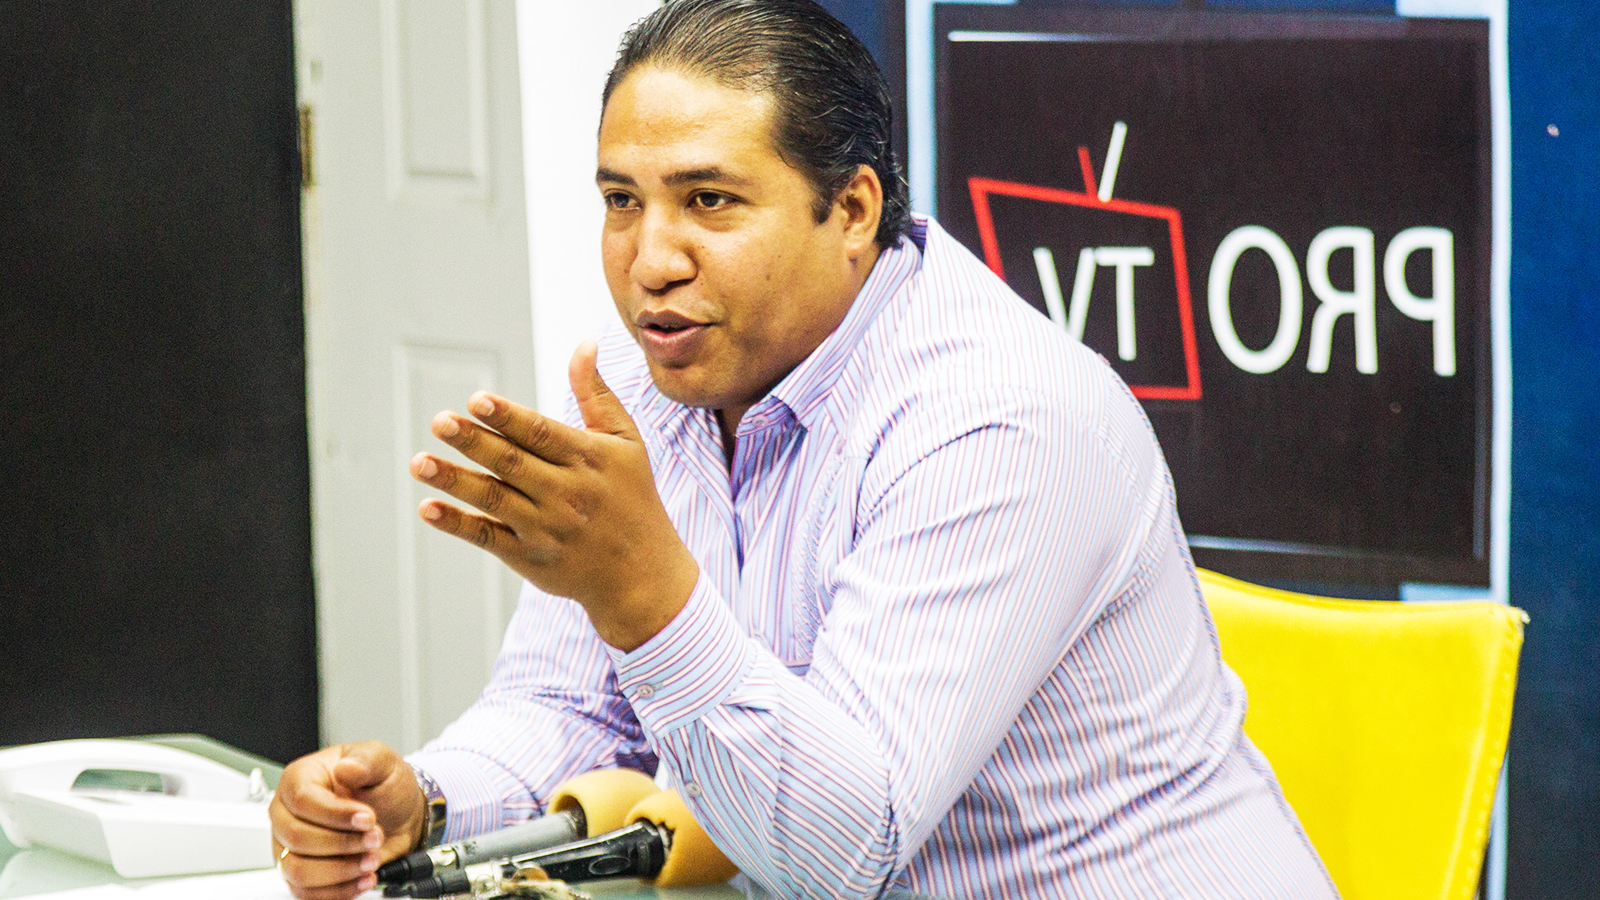 REPÚBLICA DOMINICANA: Solo Noticias. Rodolfo Cordones